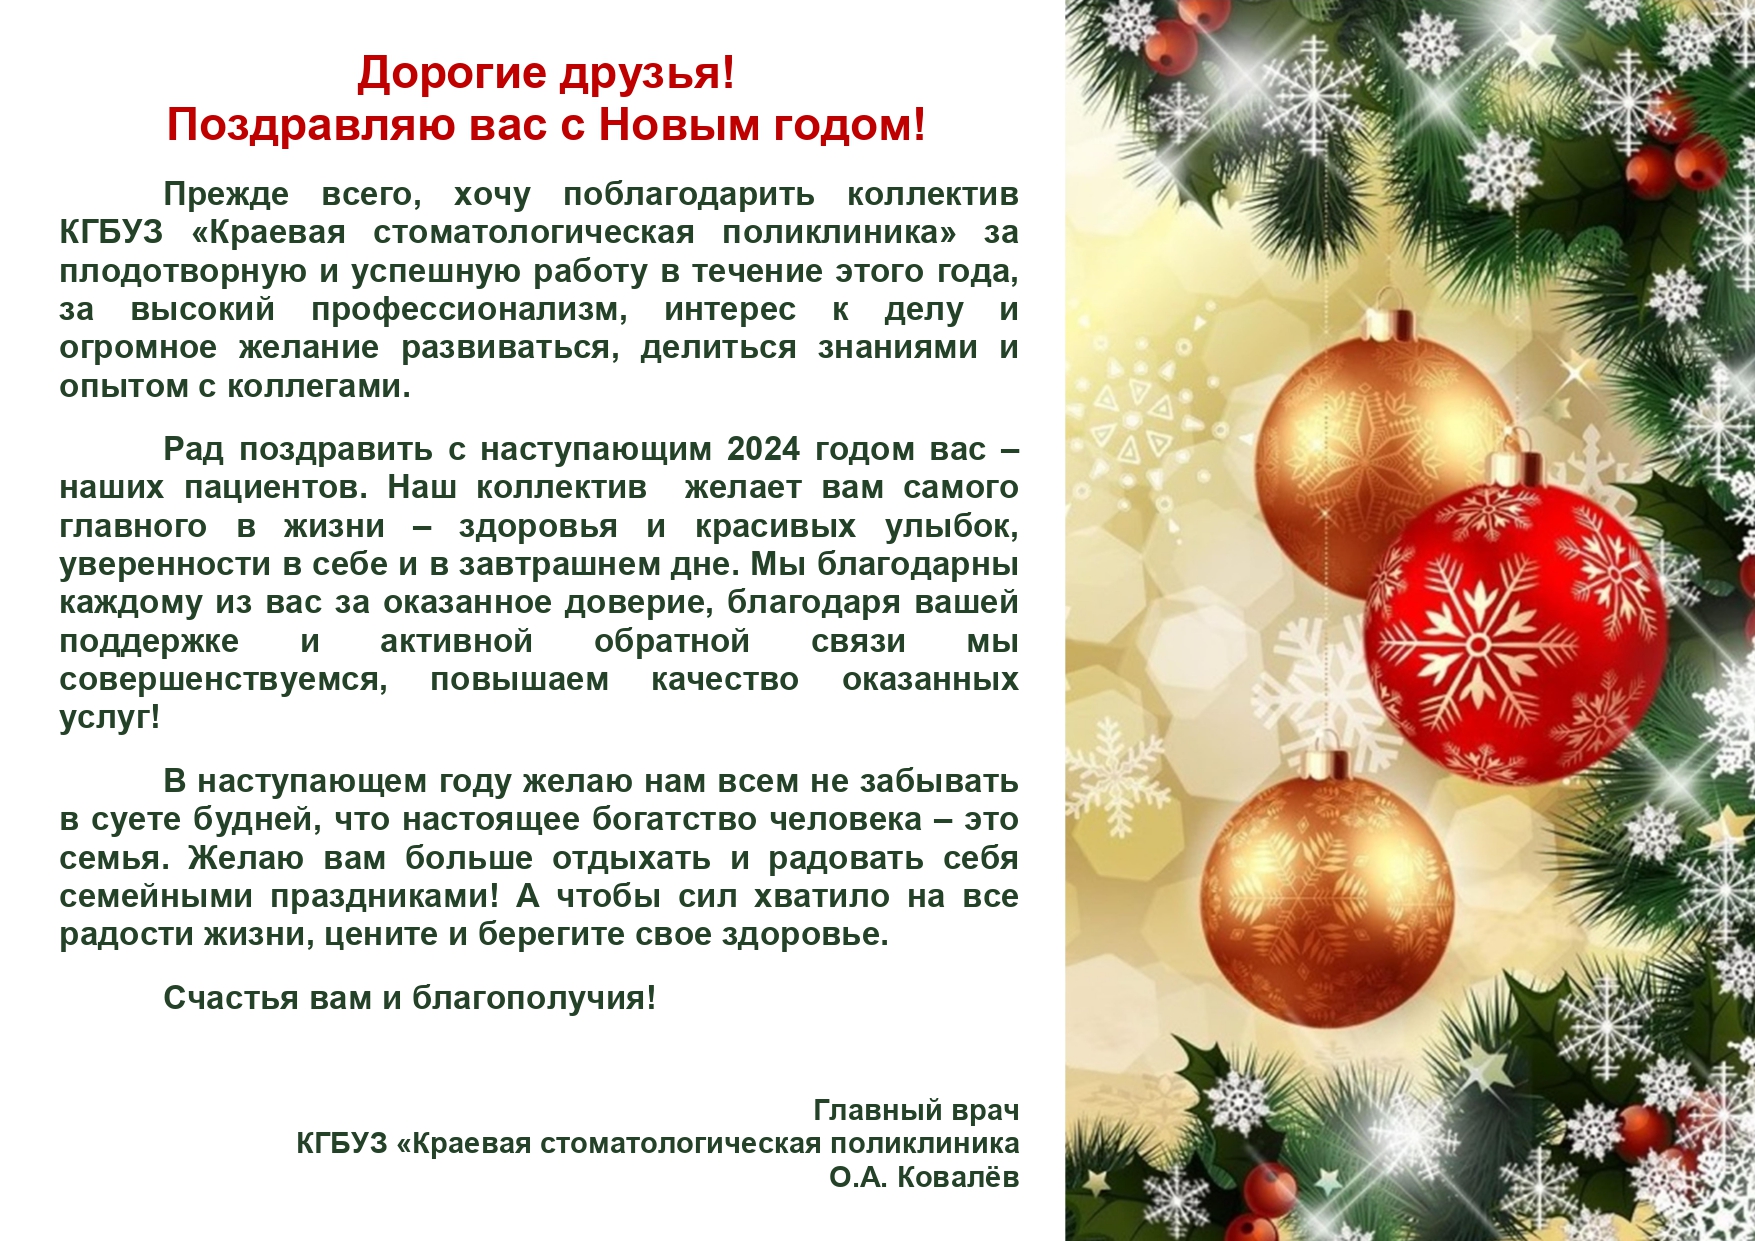 Новогоднее поздравление главного врача О.А.Ковалёва